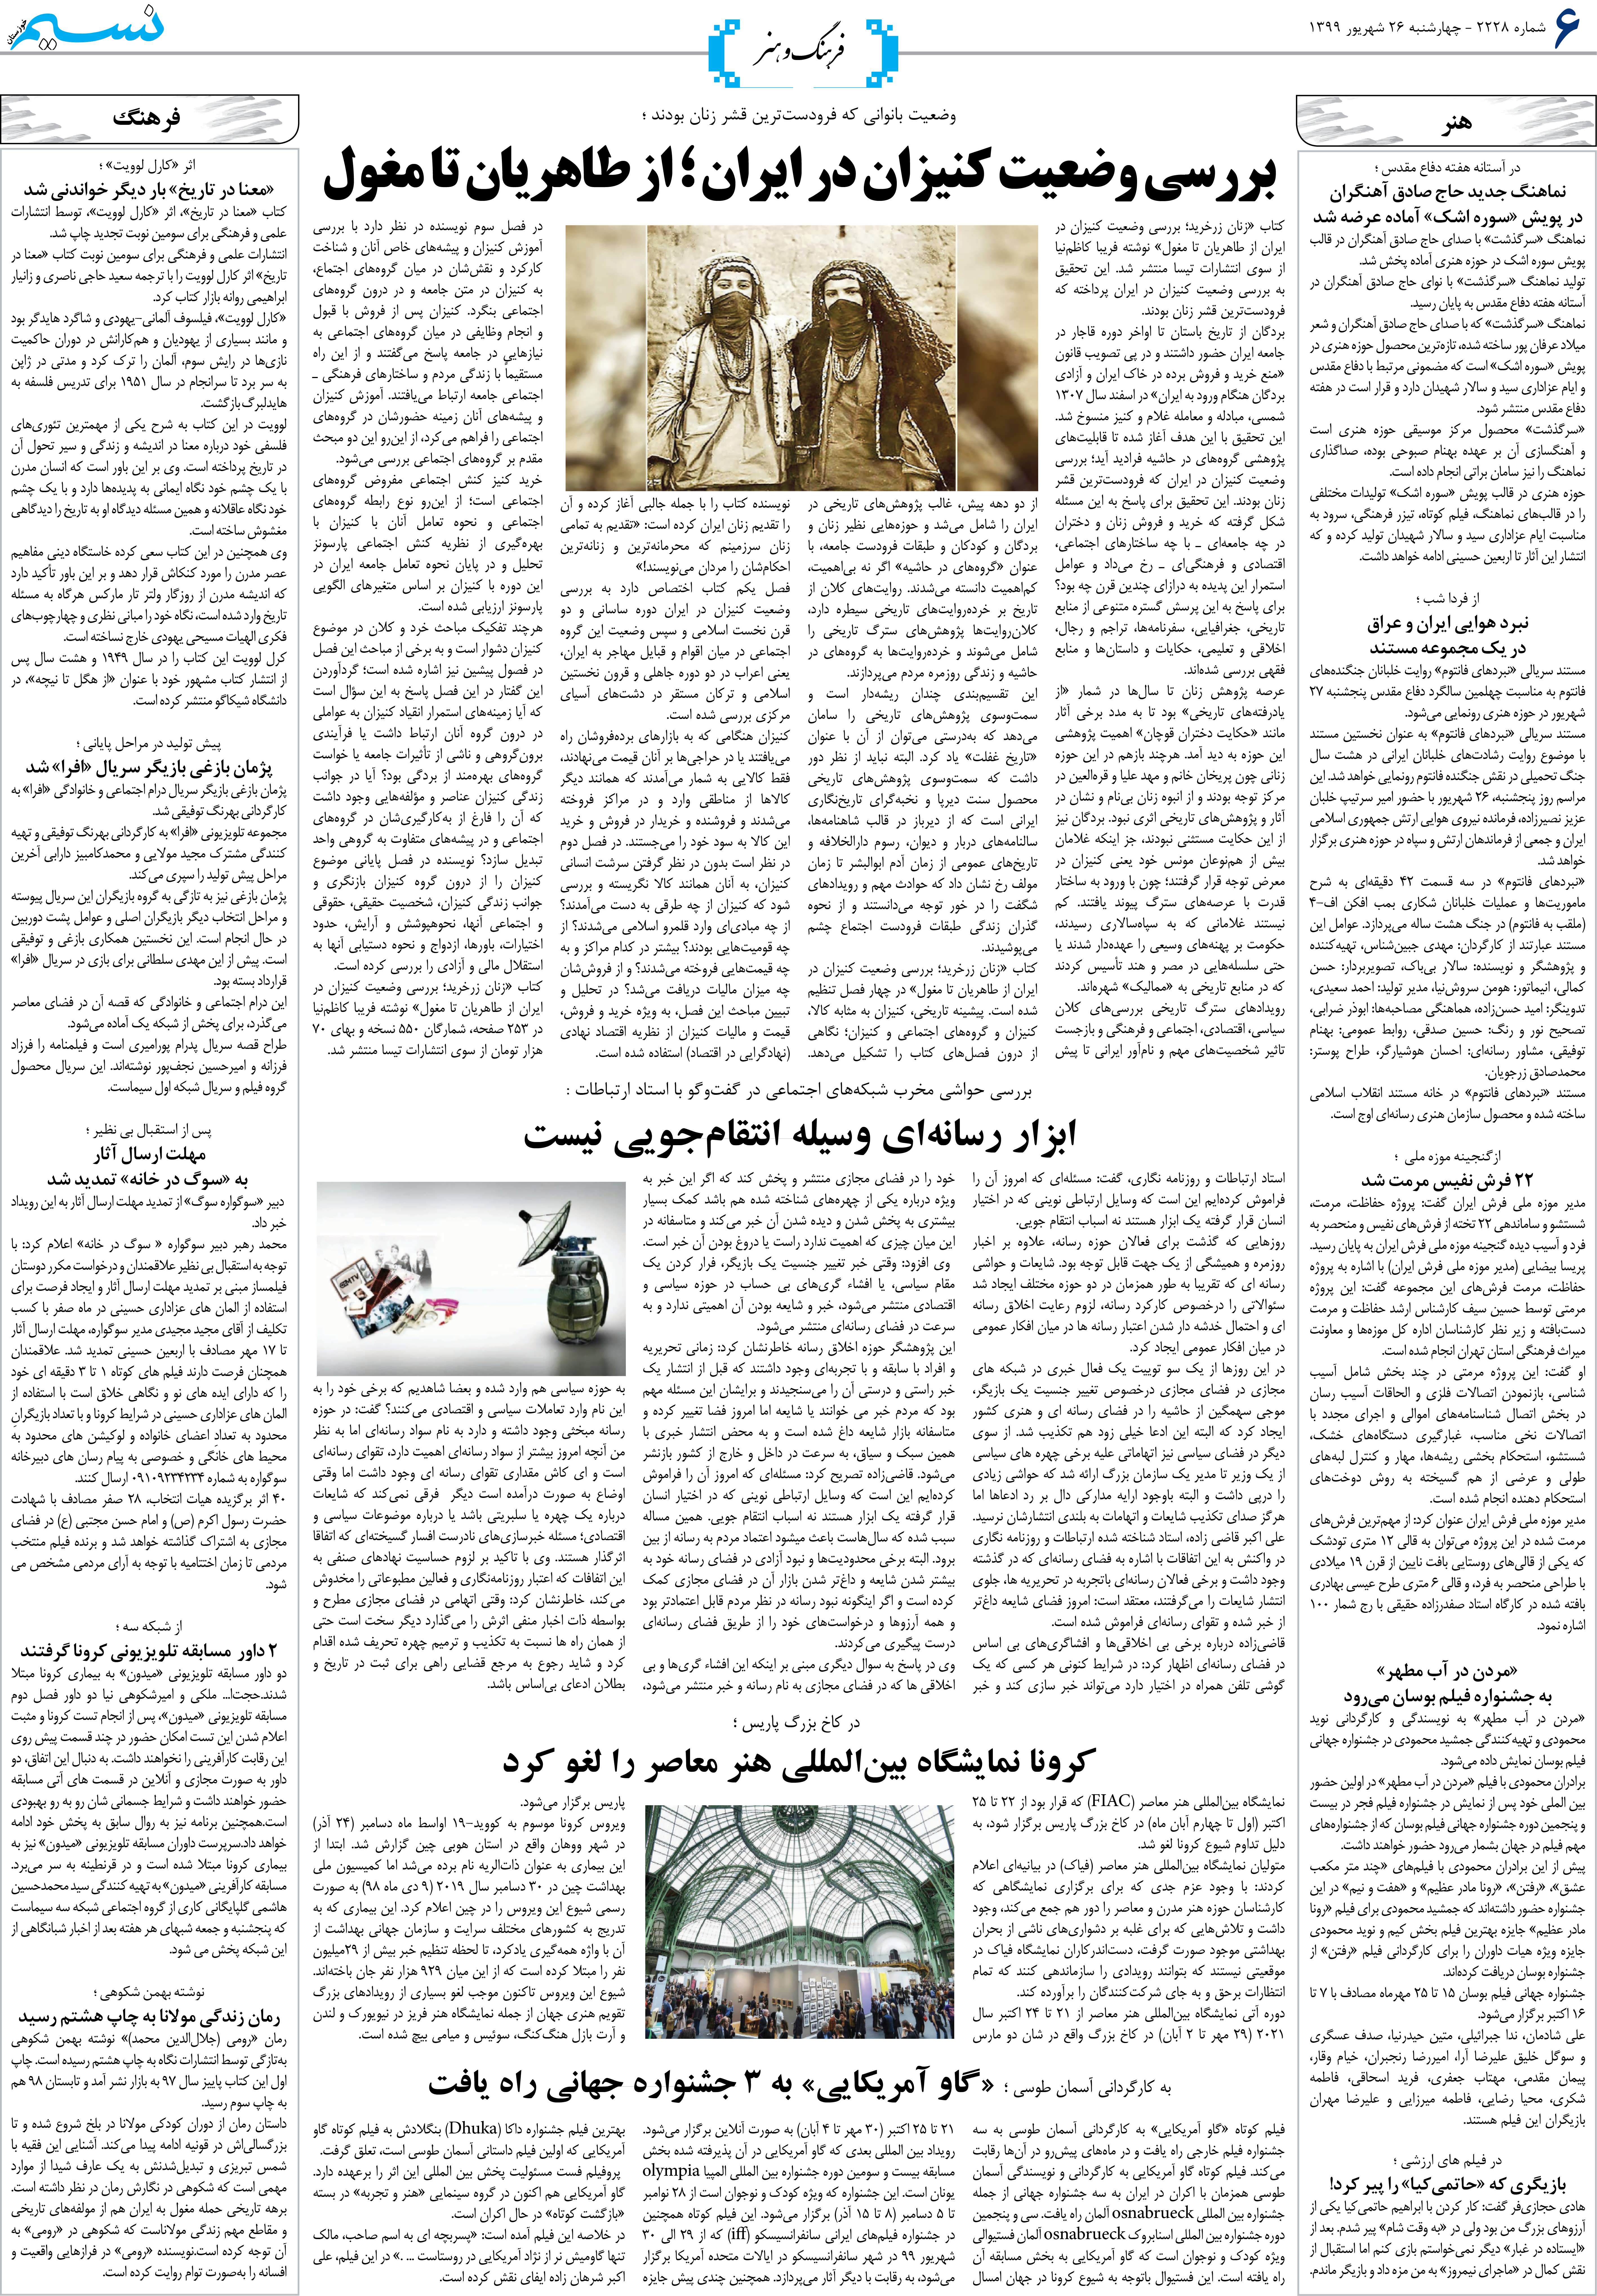 صفحه فرهنگ و هنر روزنامه نسیم شماره 2228